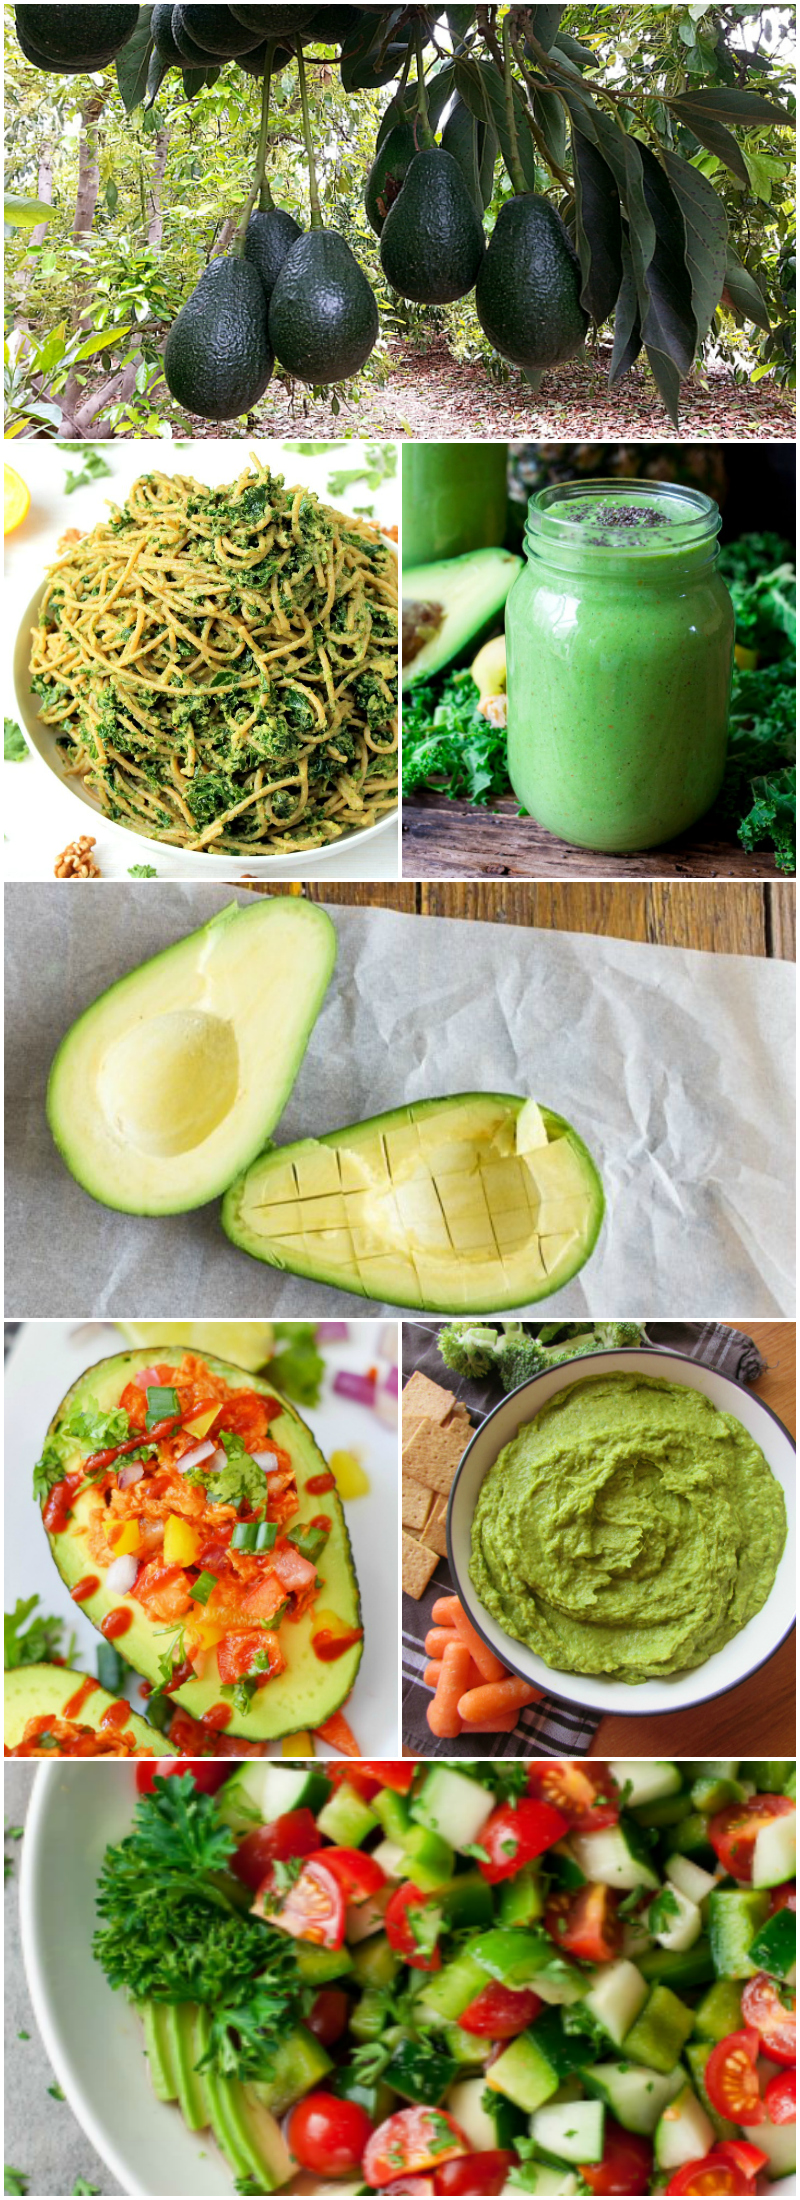 recipes made from avocados